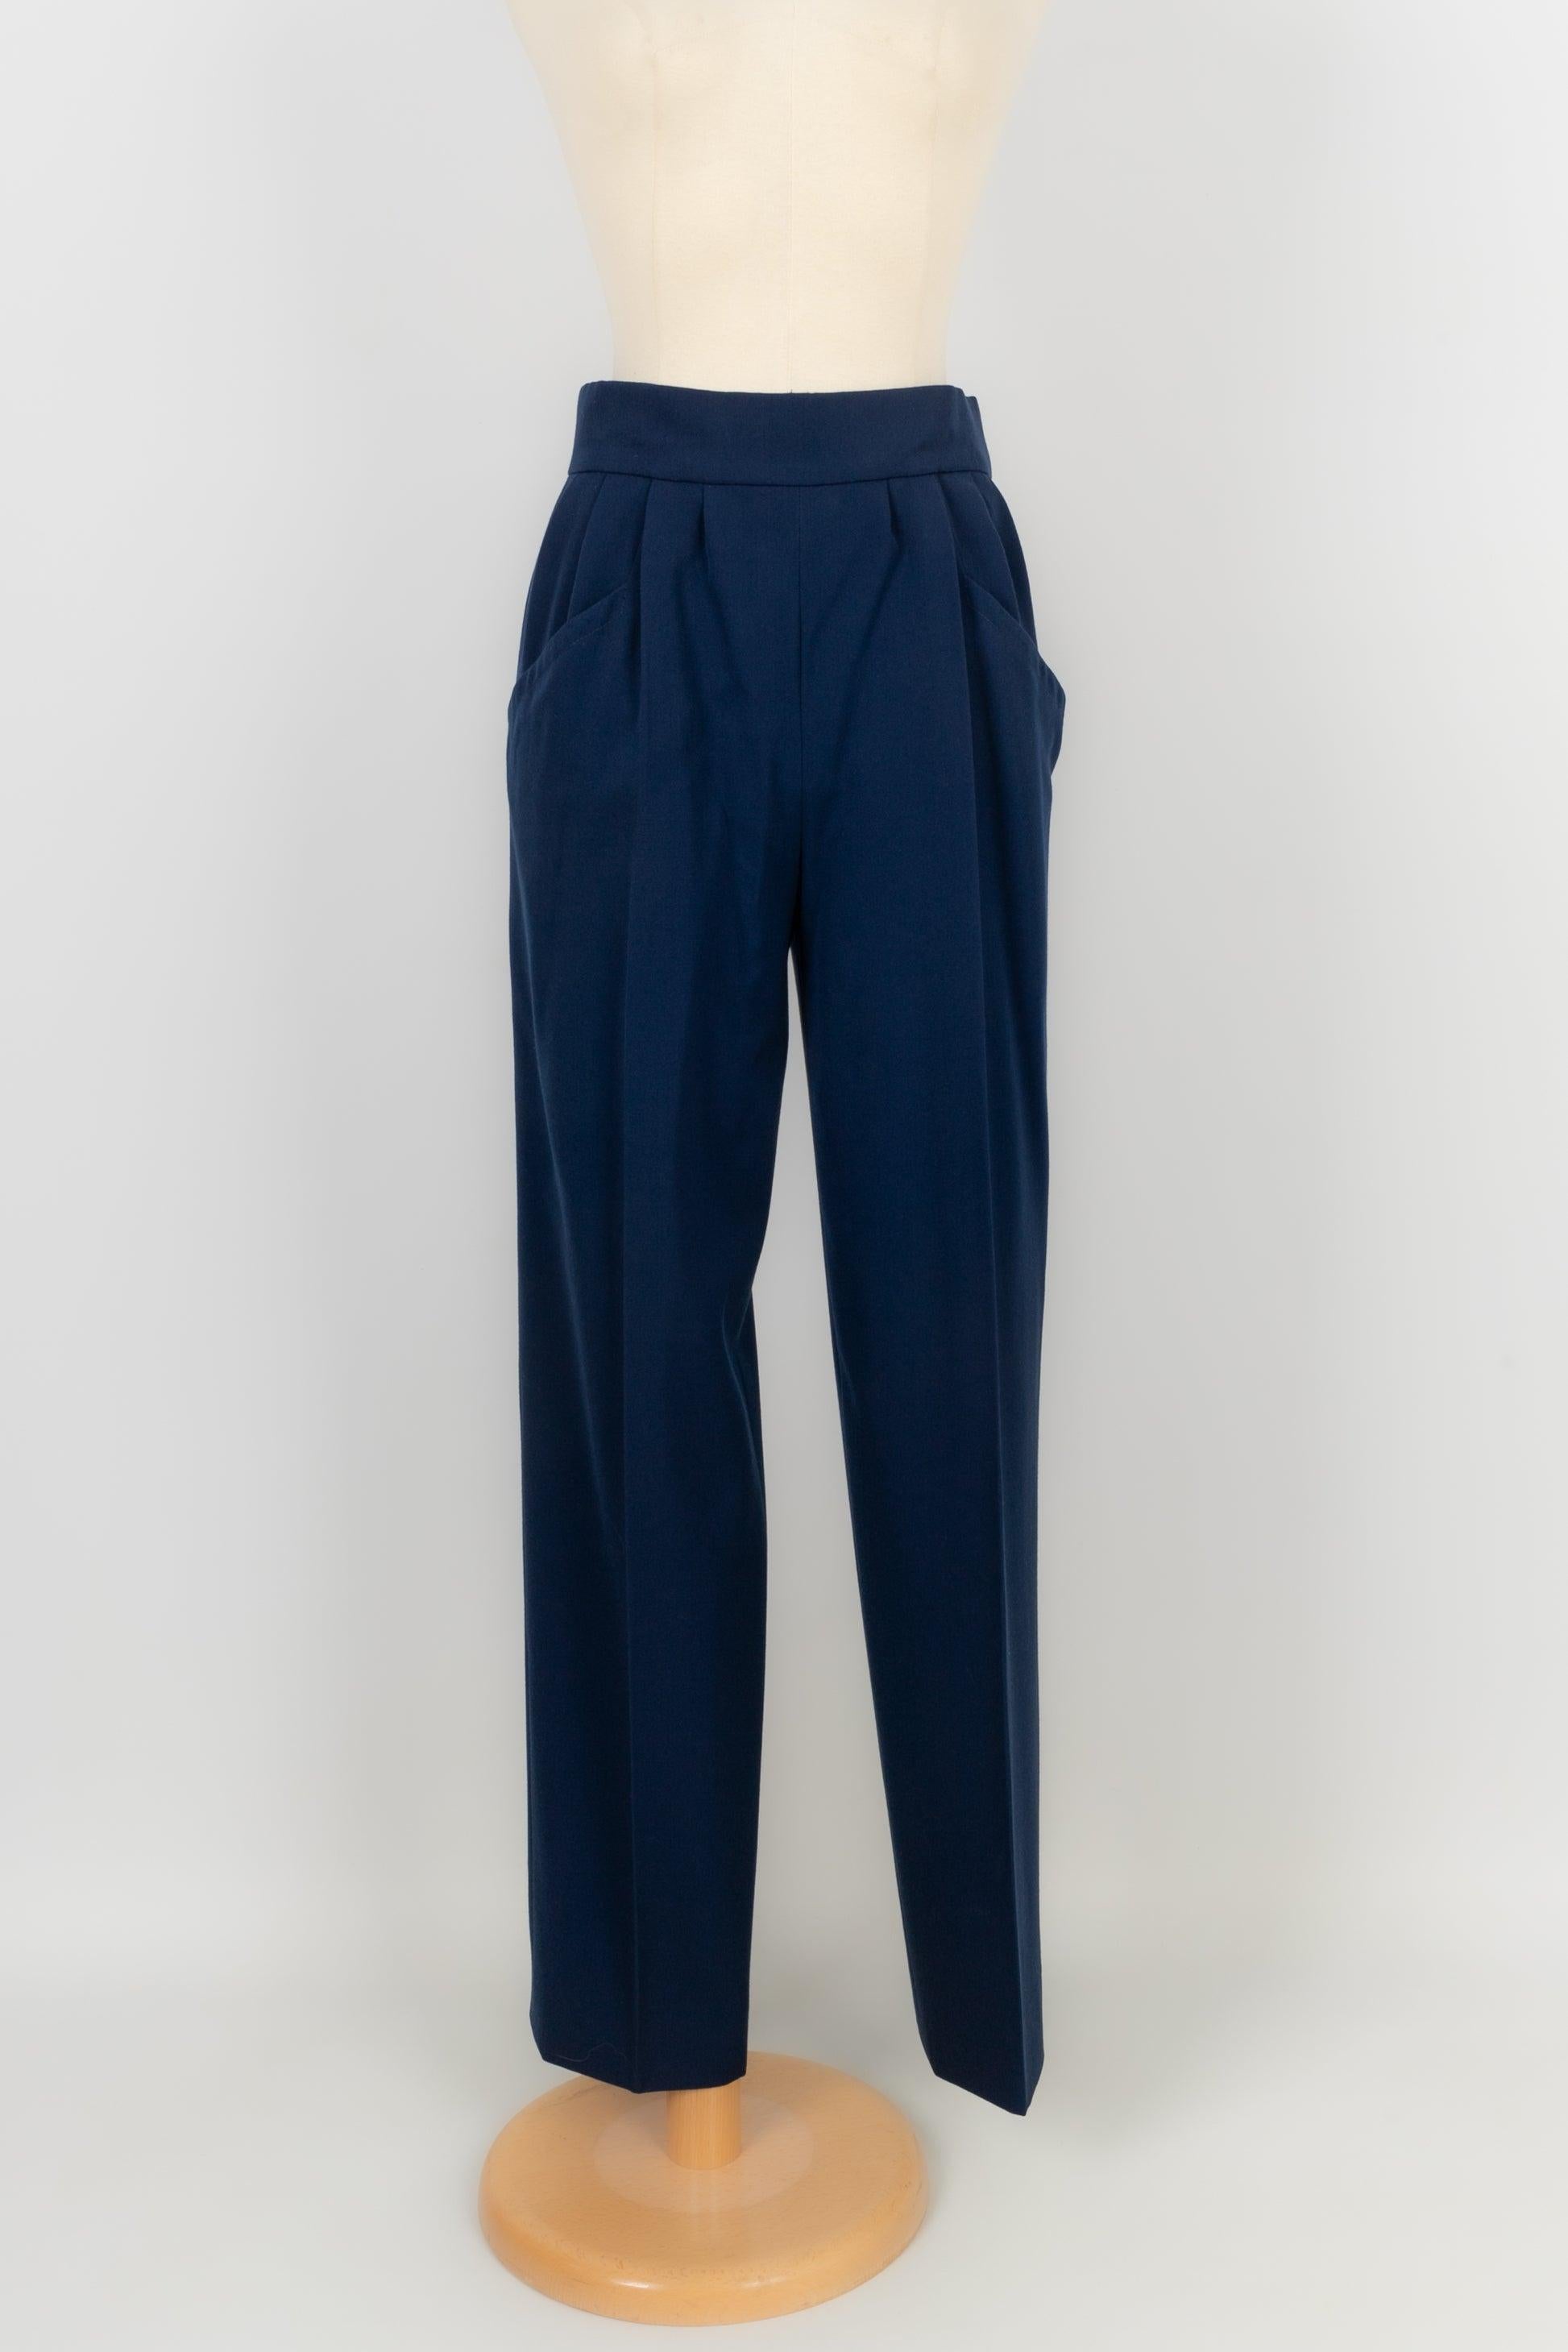 Yves Saint Laurent Blue Wool Pant Suit Haute Couture 36FR/38FR For Sale 8